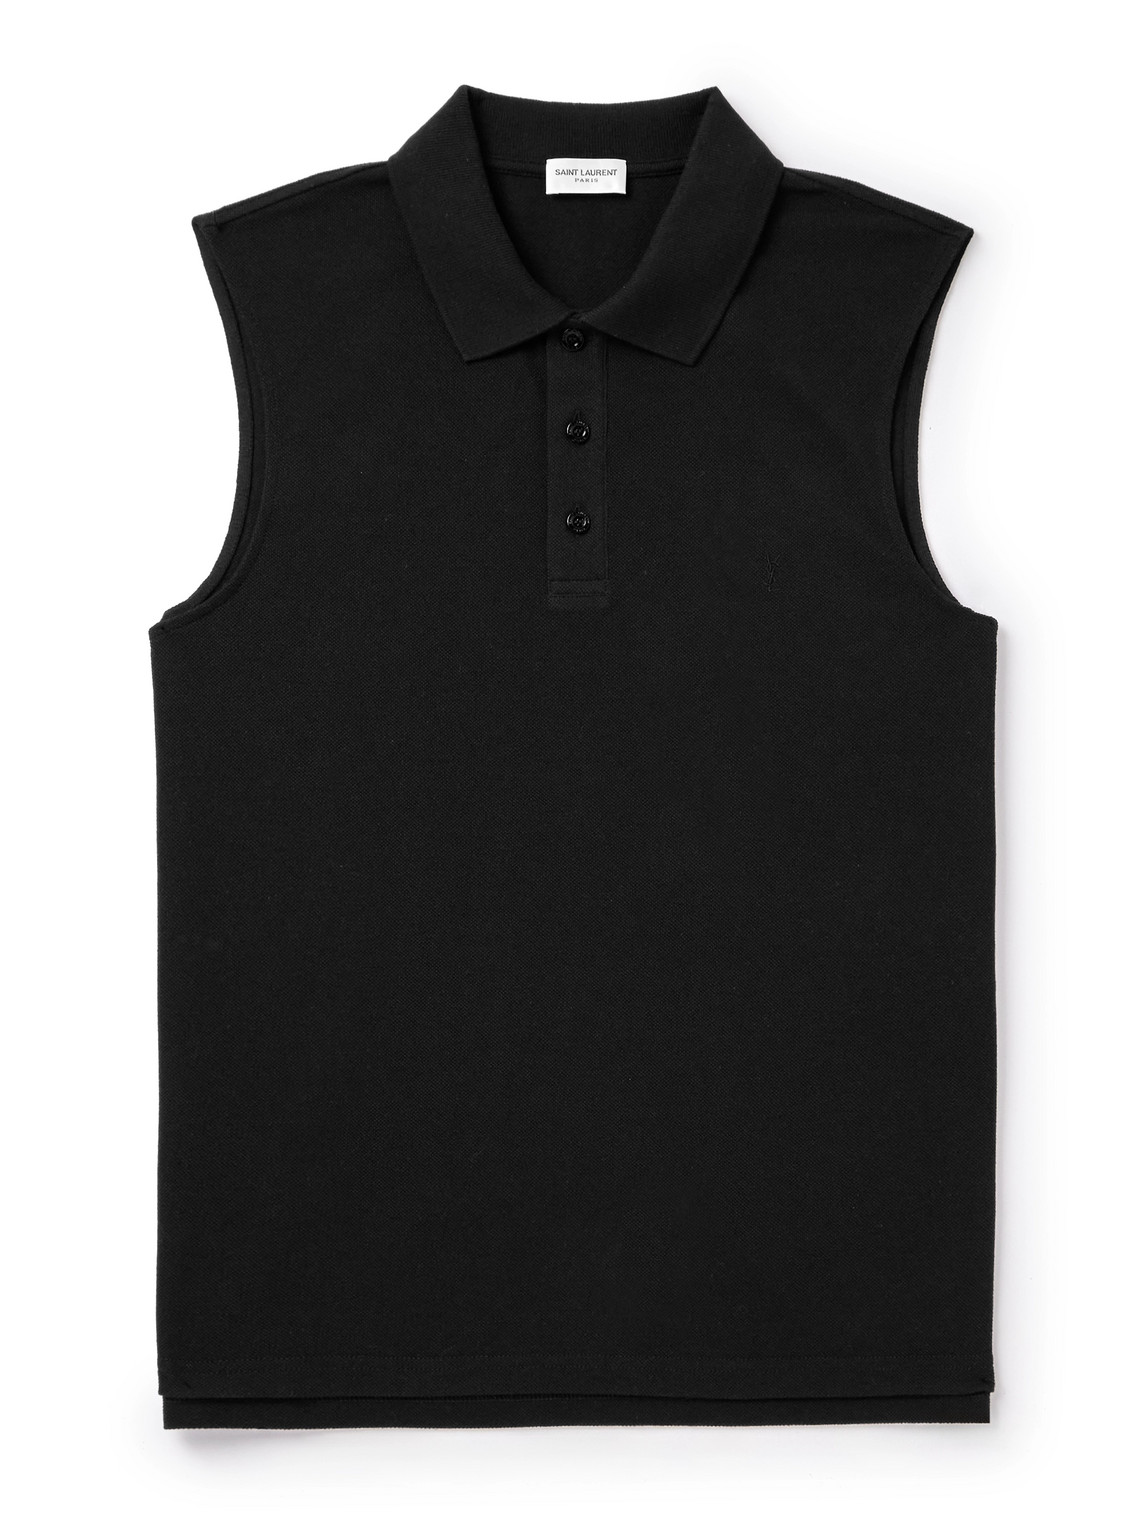 SAINT LAURENT - Sleeveless Cotton-Blend Piqué Polo Shirt - Men - Black - M von SAINT LAURENT